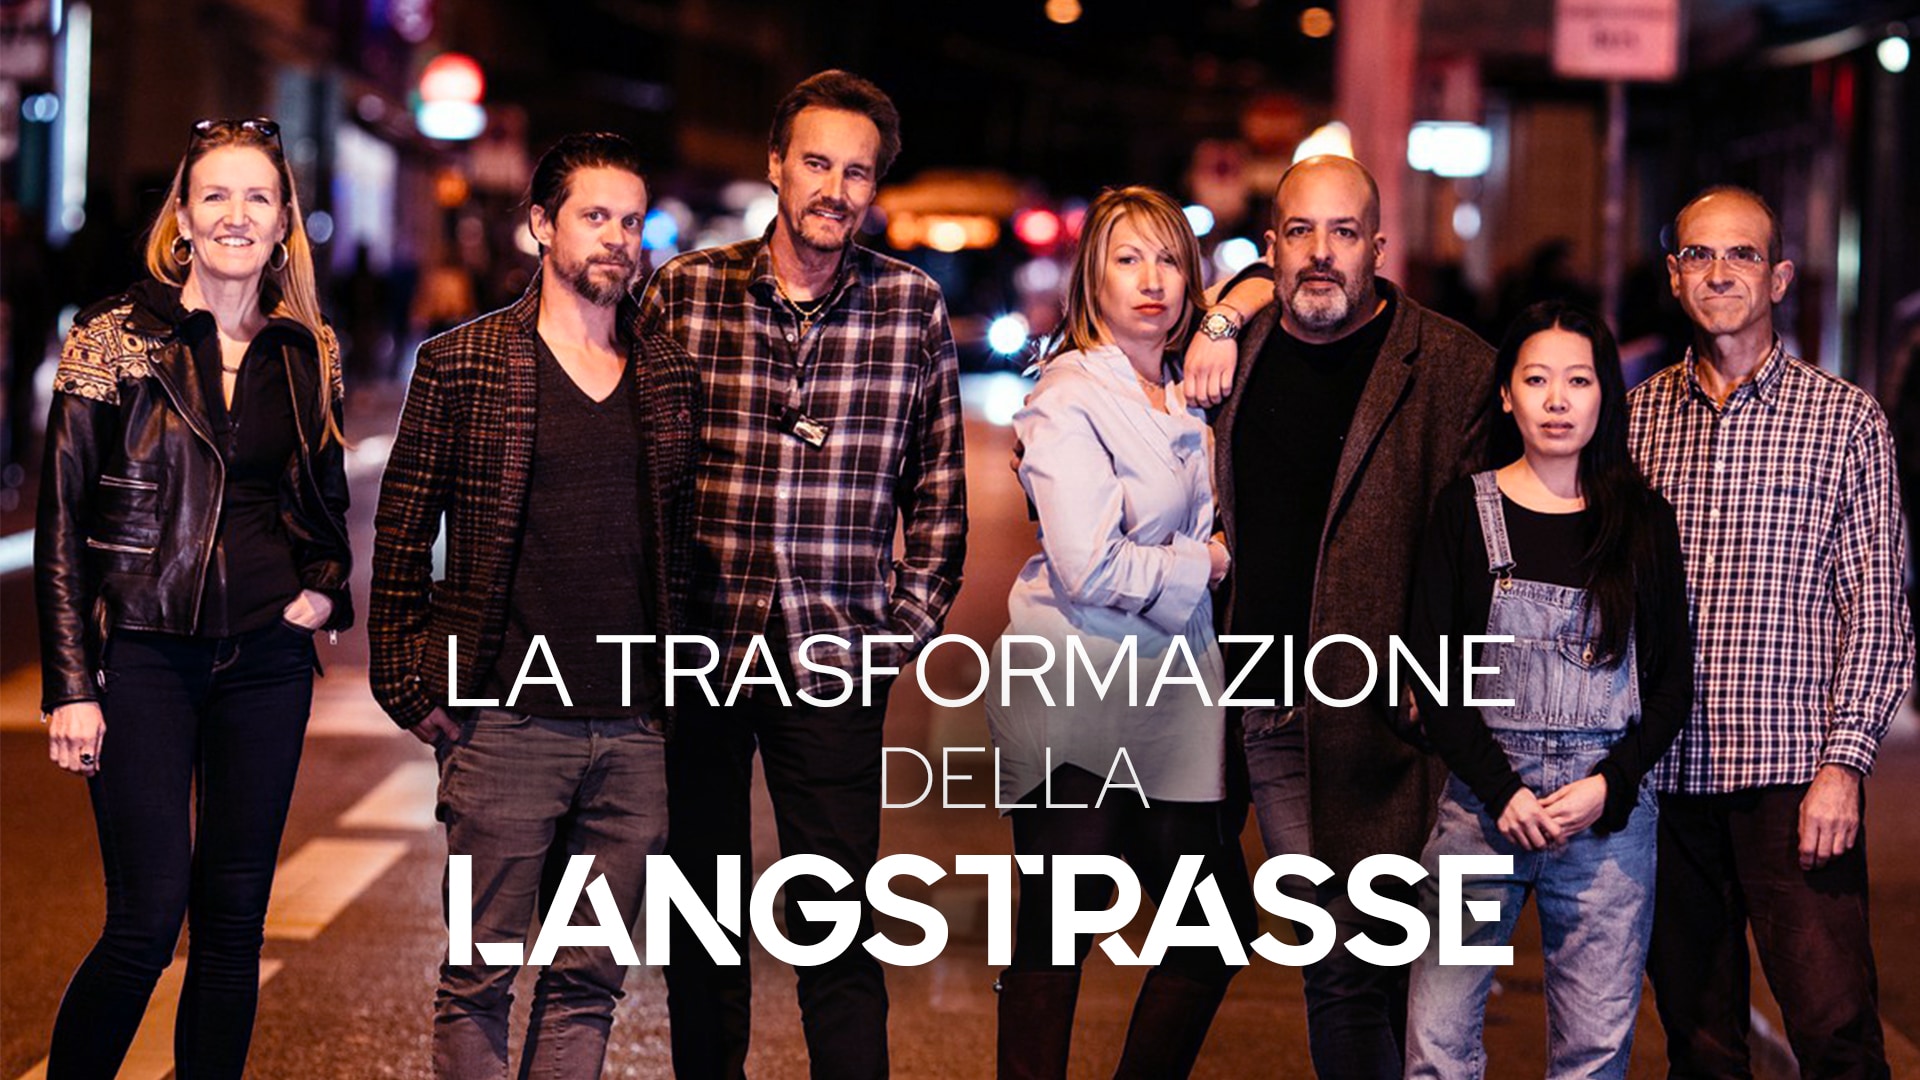 La trasformazione della Langstrasse